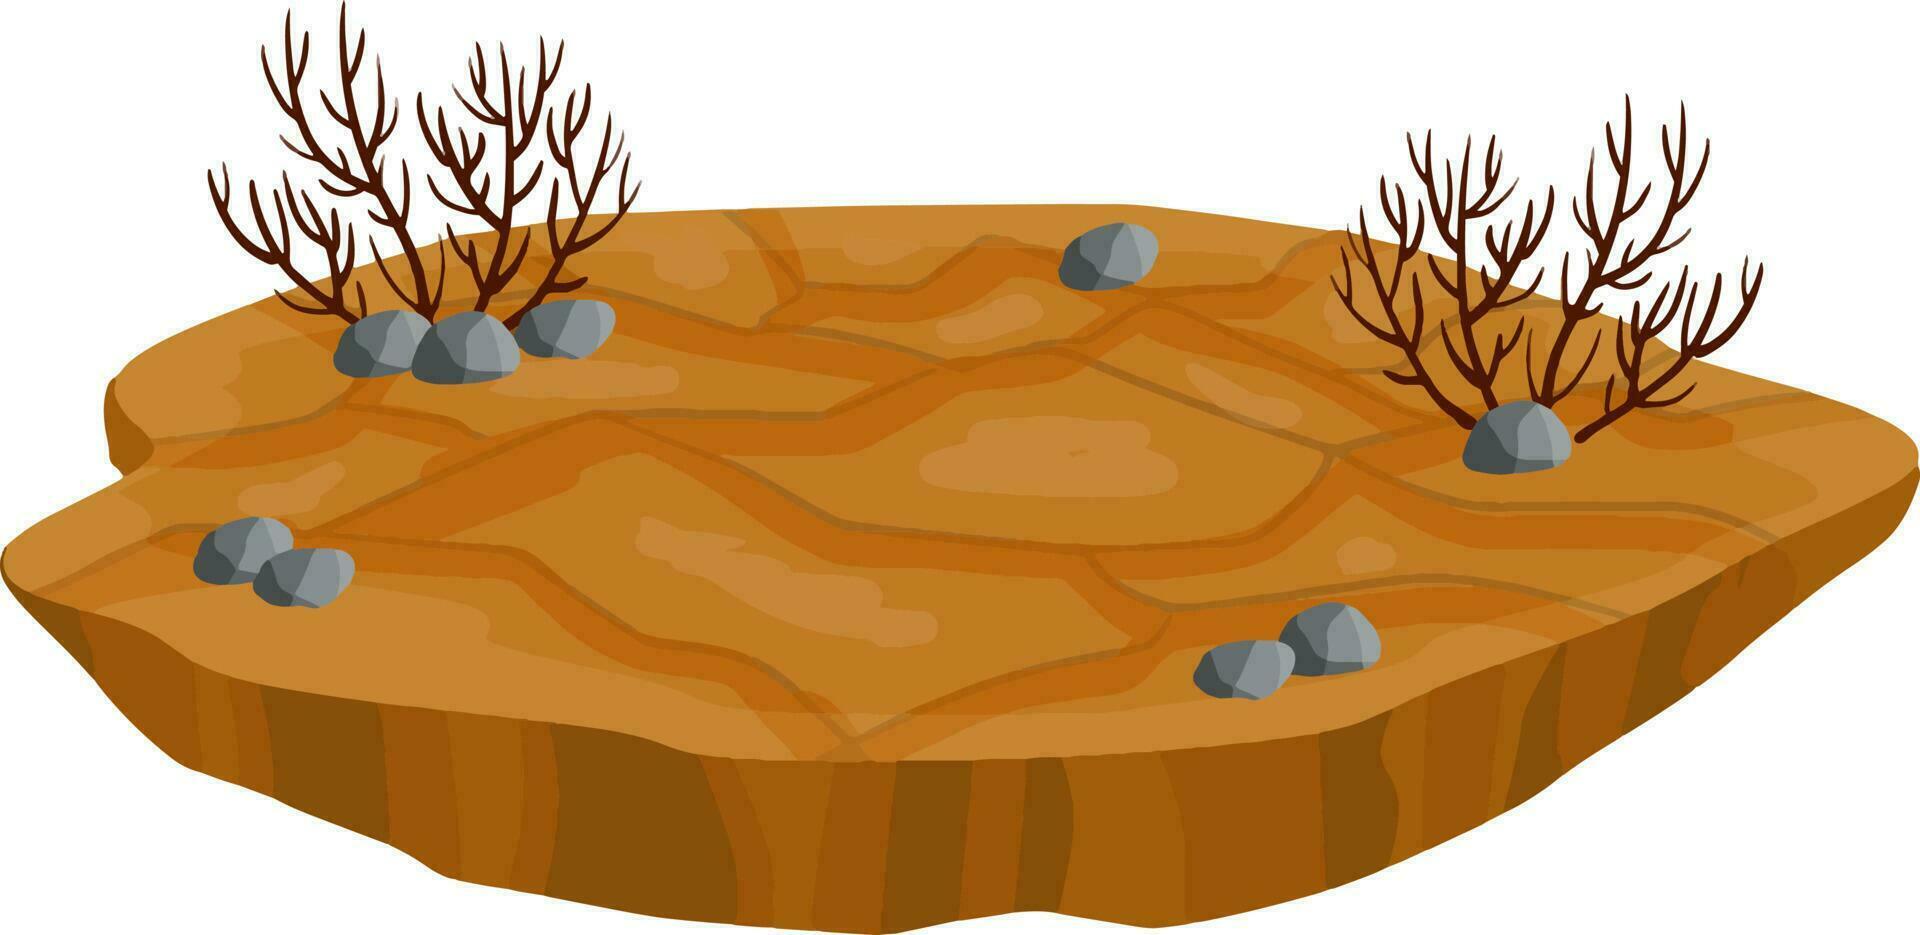 torr landa stäpp och öknar. smuts och damm. brun golv. tecknad serie illustration. plattform jord vektor